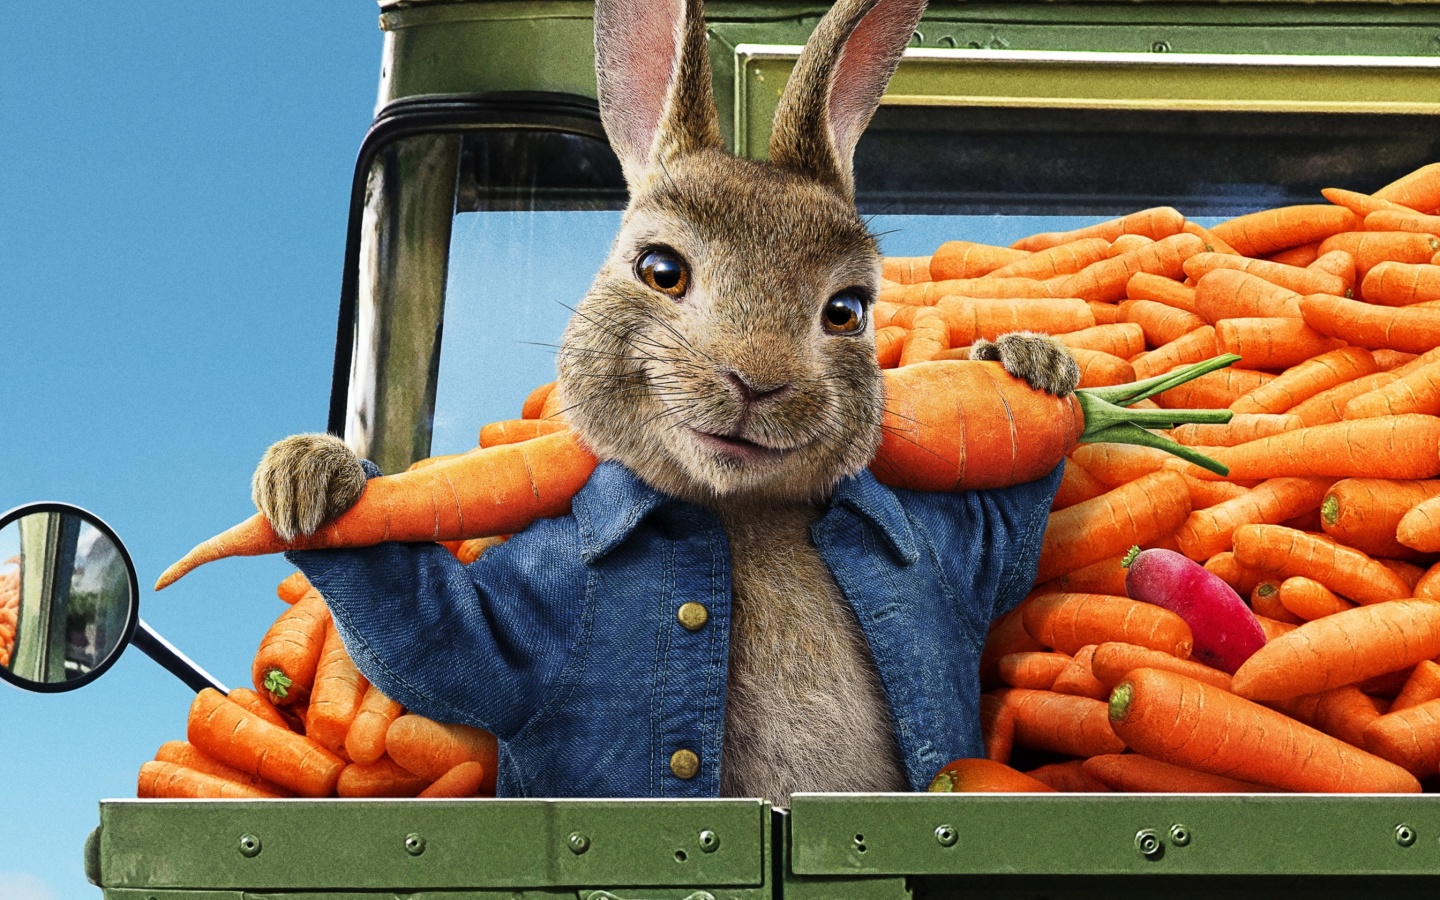 Peter Rabbit 2 The Runaway 2020 wallpaper 1440x900